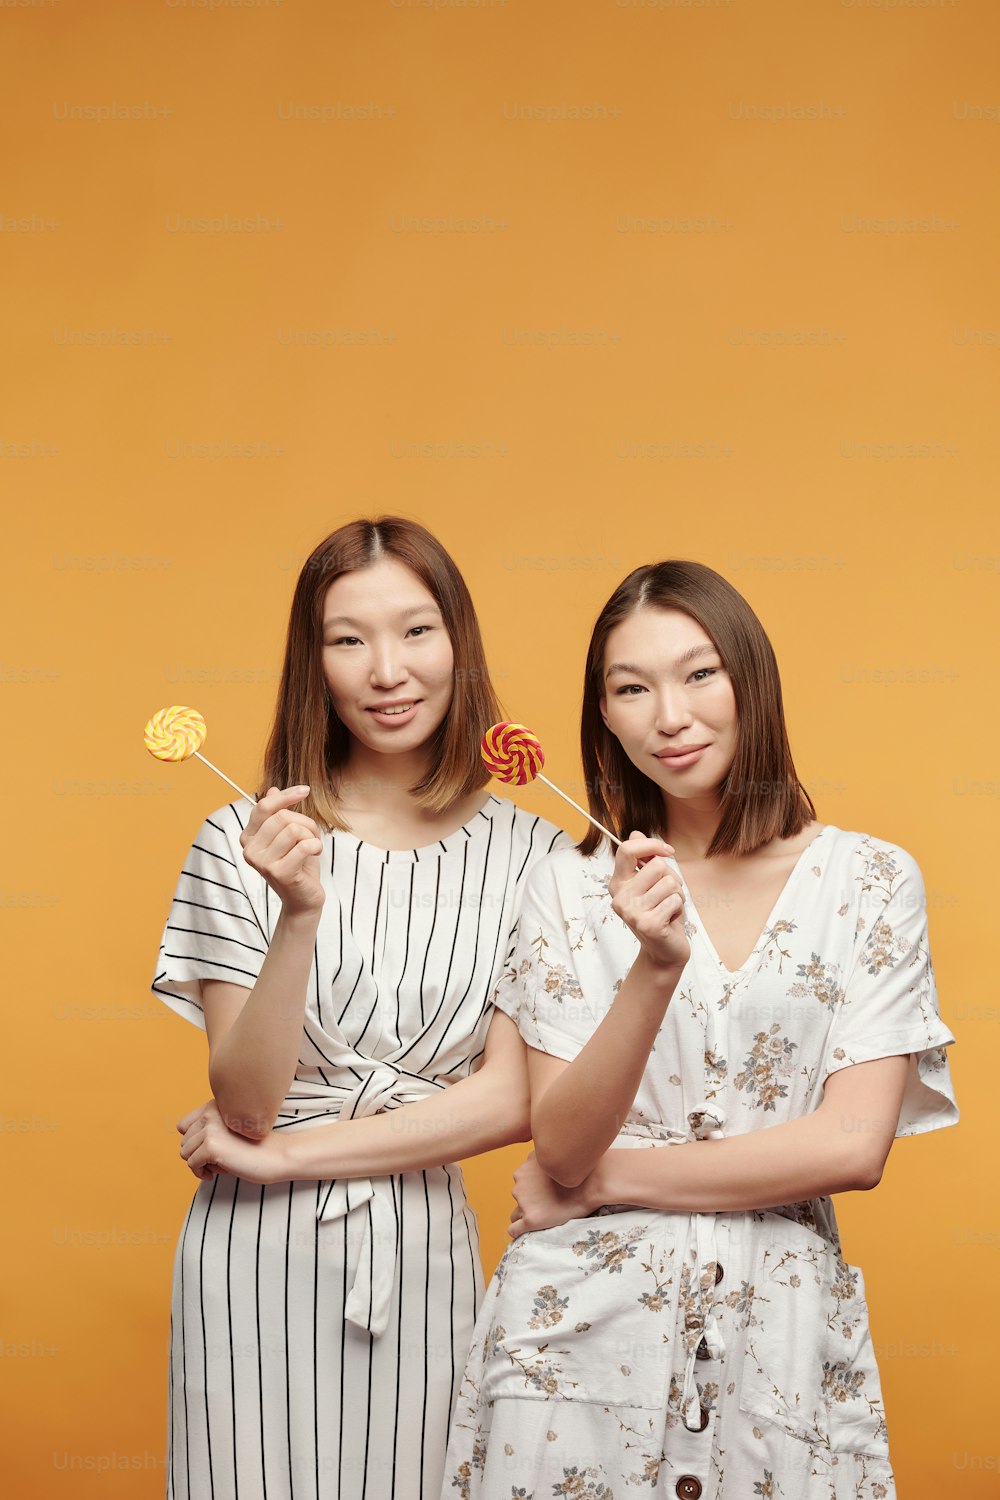 Glückliche junge weibliche Zwillinge asiatischer Abstammung mit Lutschern sehen Sie mit einem Lächeln an, während Sie vor gelbem Hintergrund vor der Kamera stehen